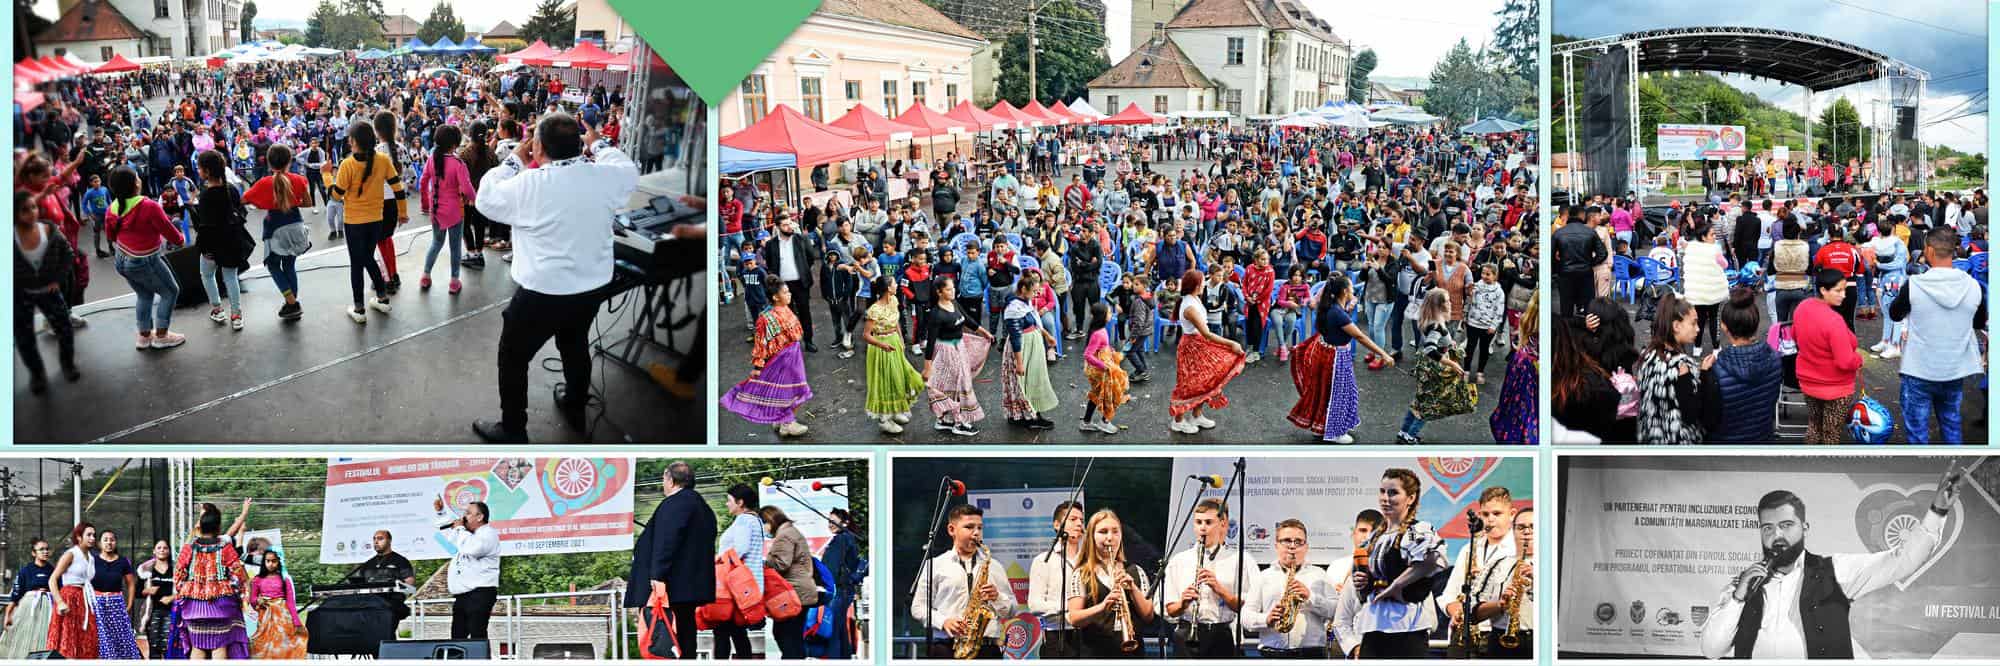 ateliere, dansuri și producători locali la a doua ediție a festivalului romilor din târnava